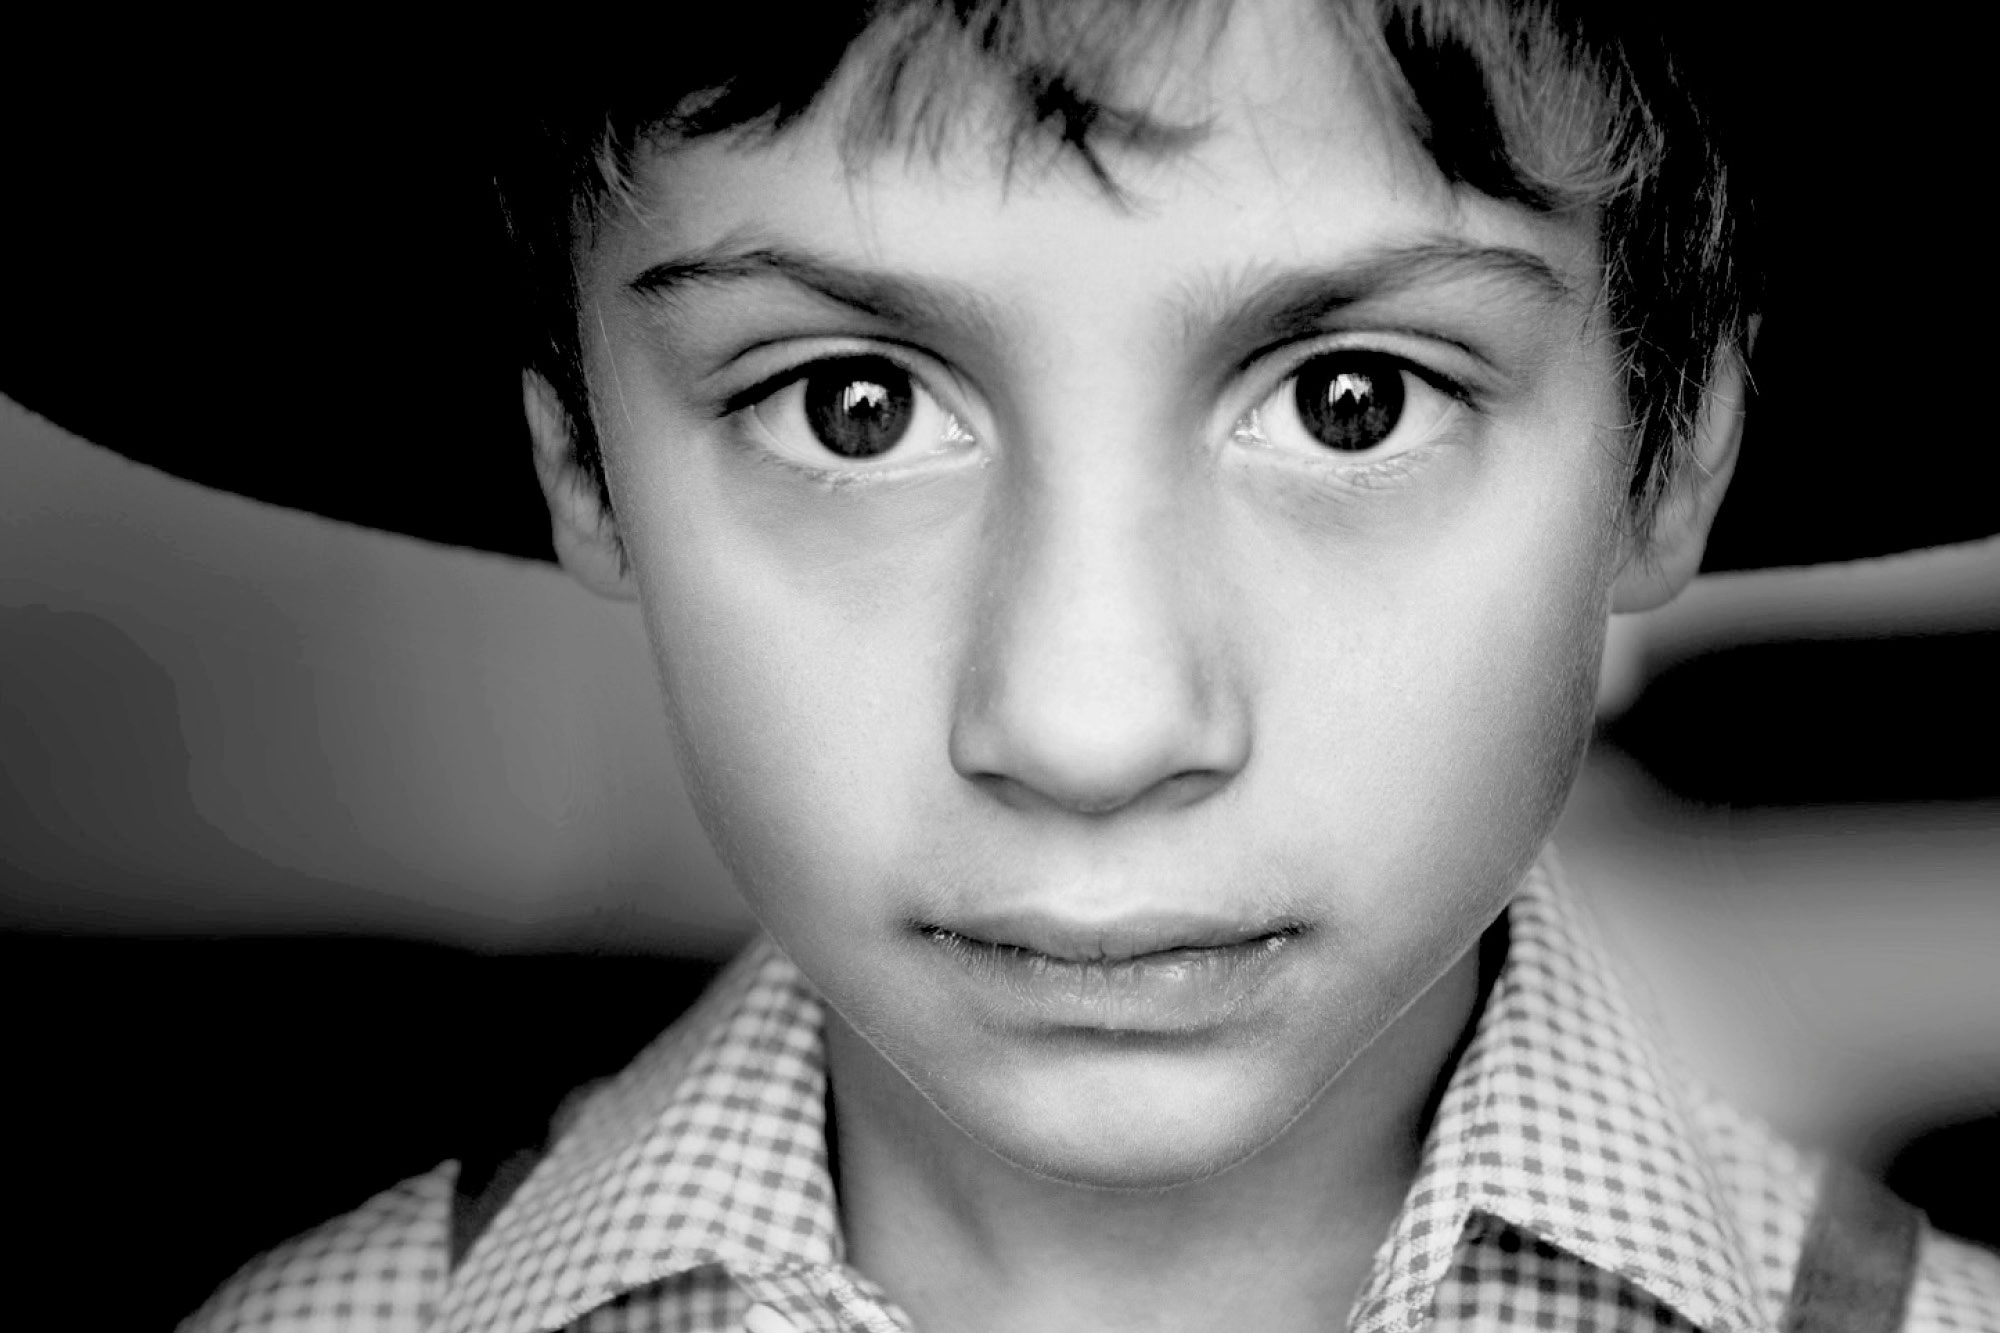 Porträtfotografie eines Jungen mit Hut (Schwarz/Weiss-Aufnahme)